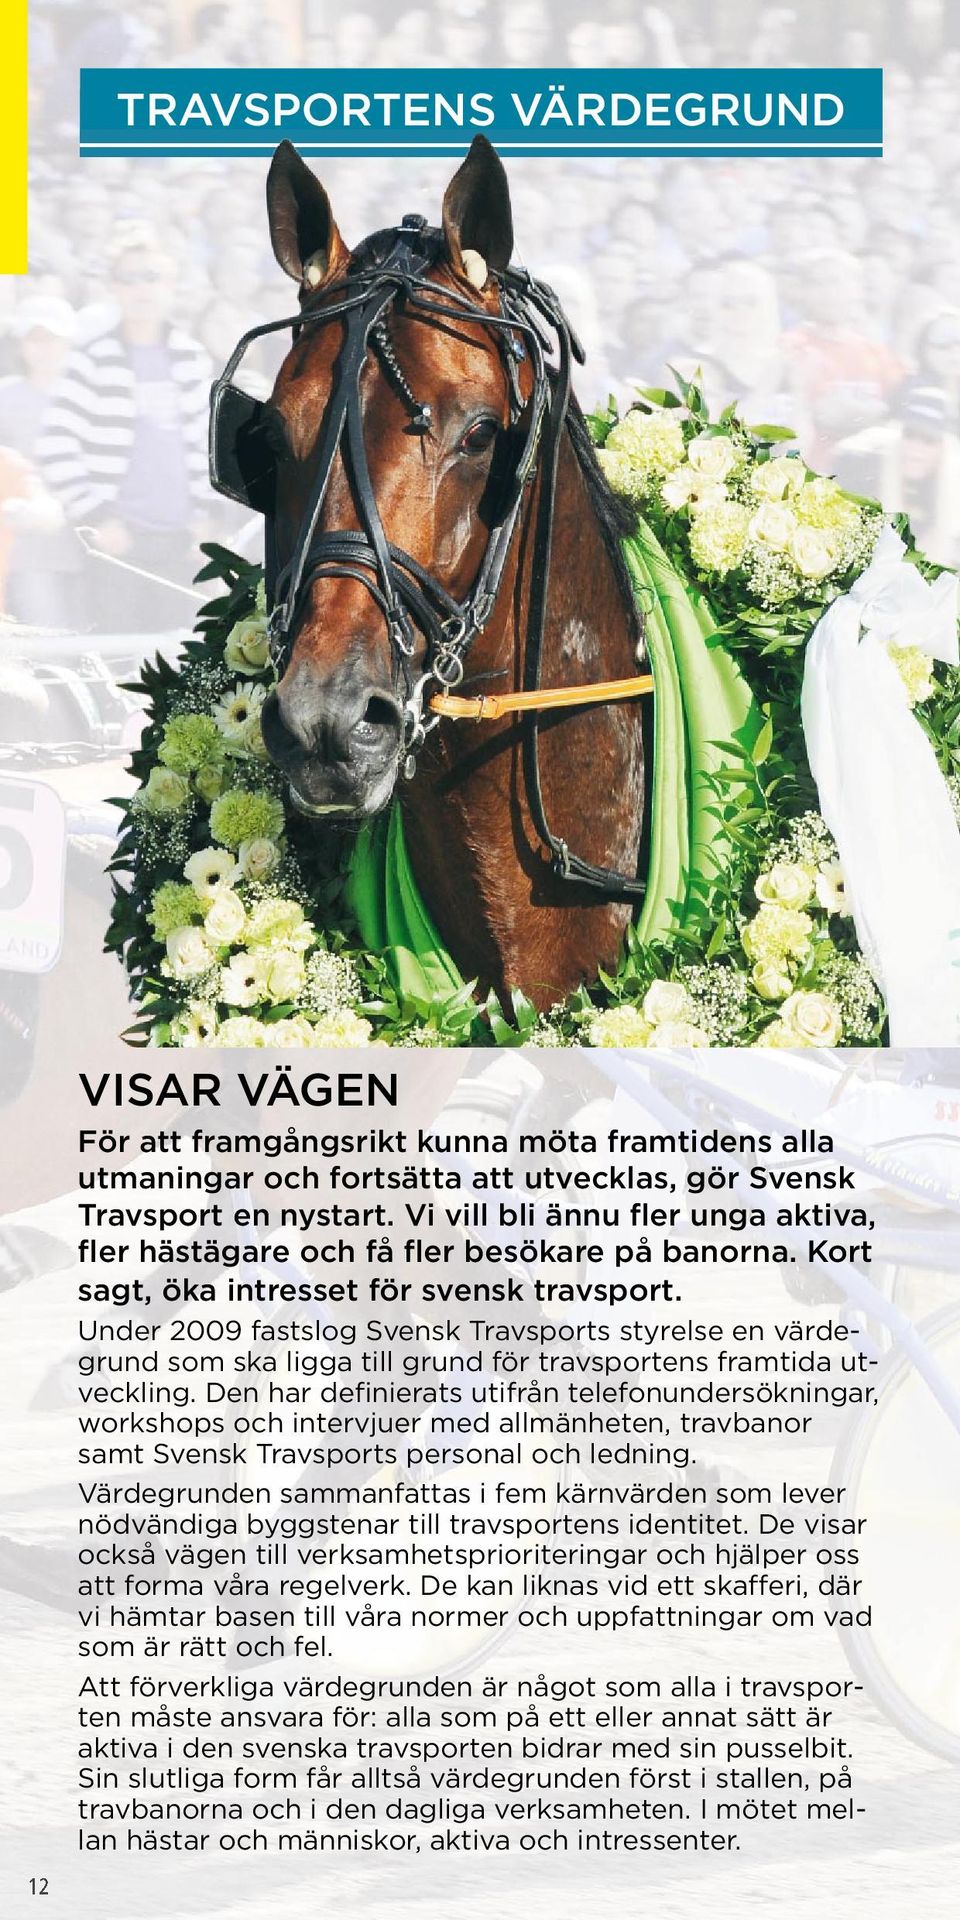 Under 2009 fastslog Svensk Travsports styrelse en värdegrund som ska ligga till grund för travsportens framtida utveckling.